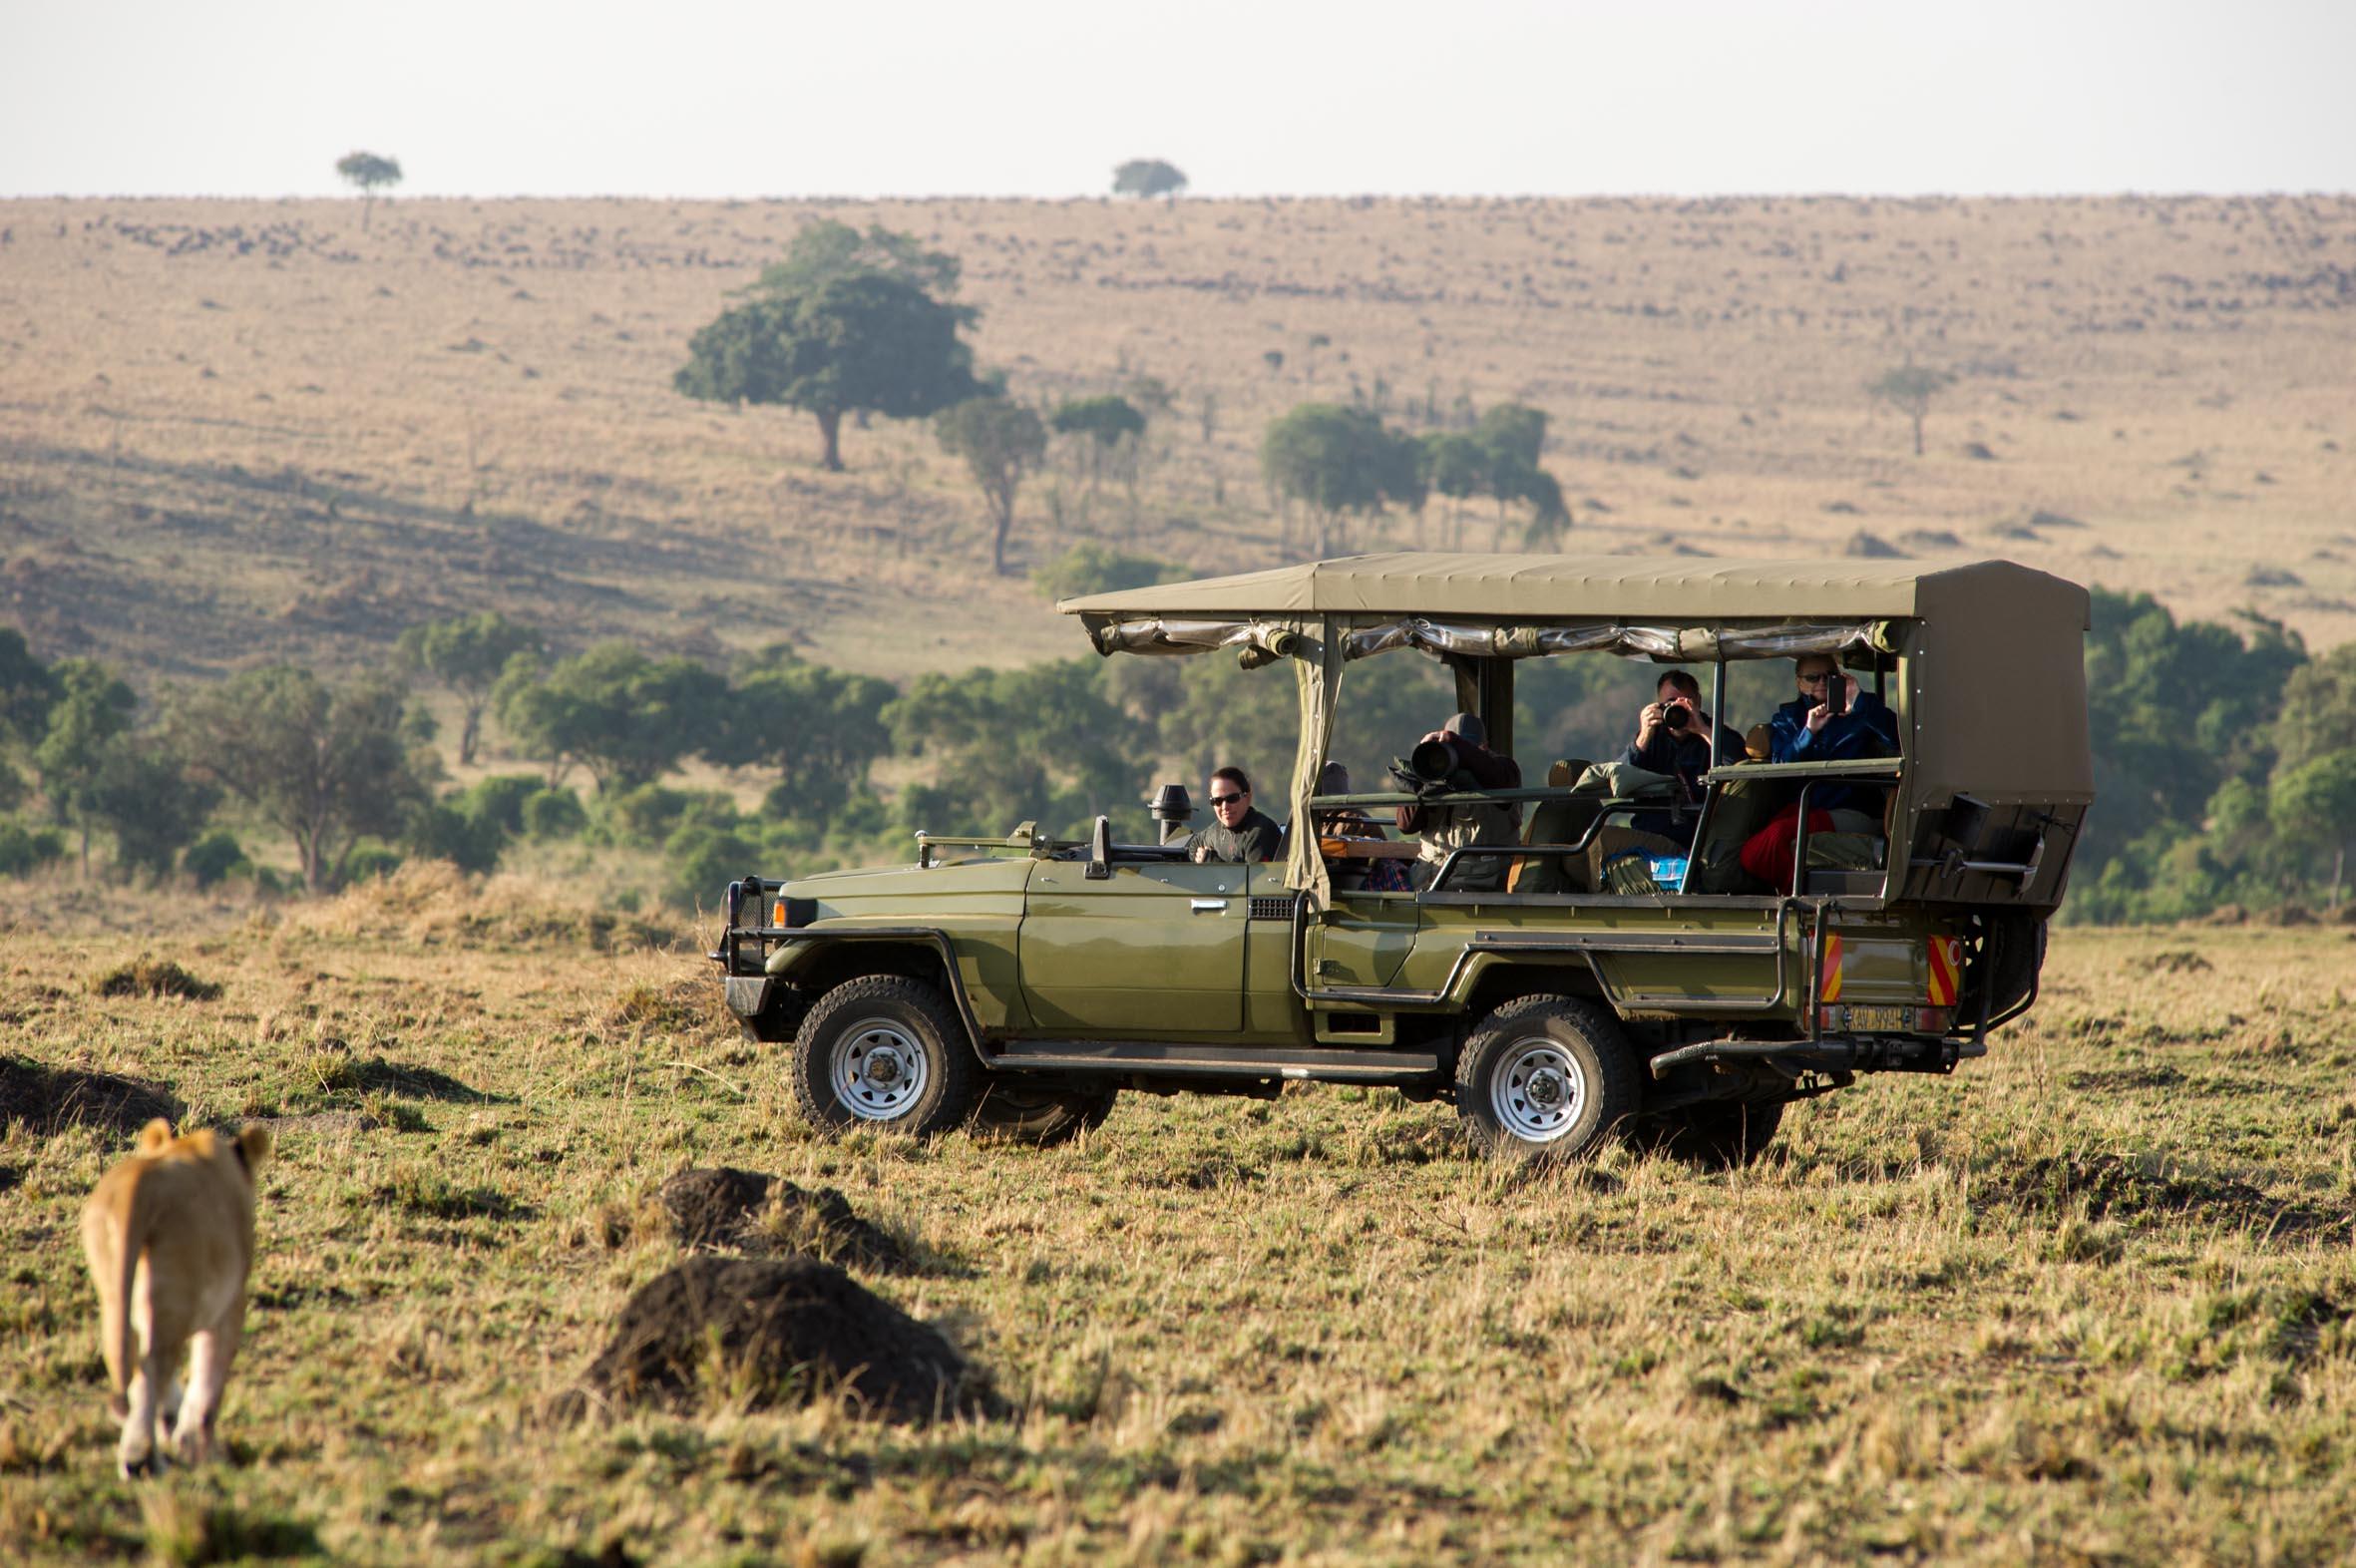 Game Drive in Masai Mara